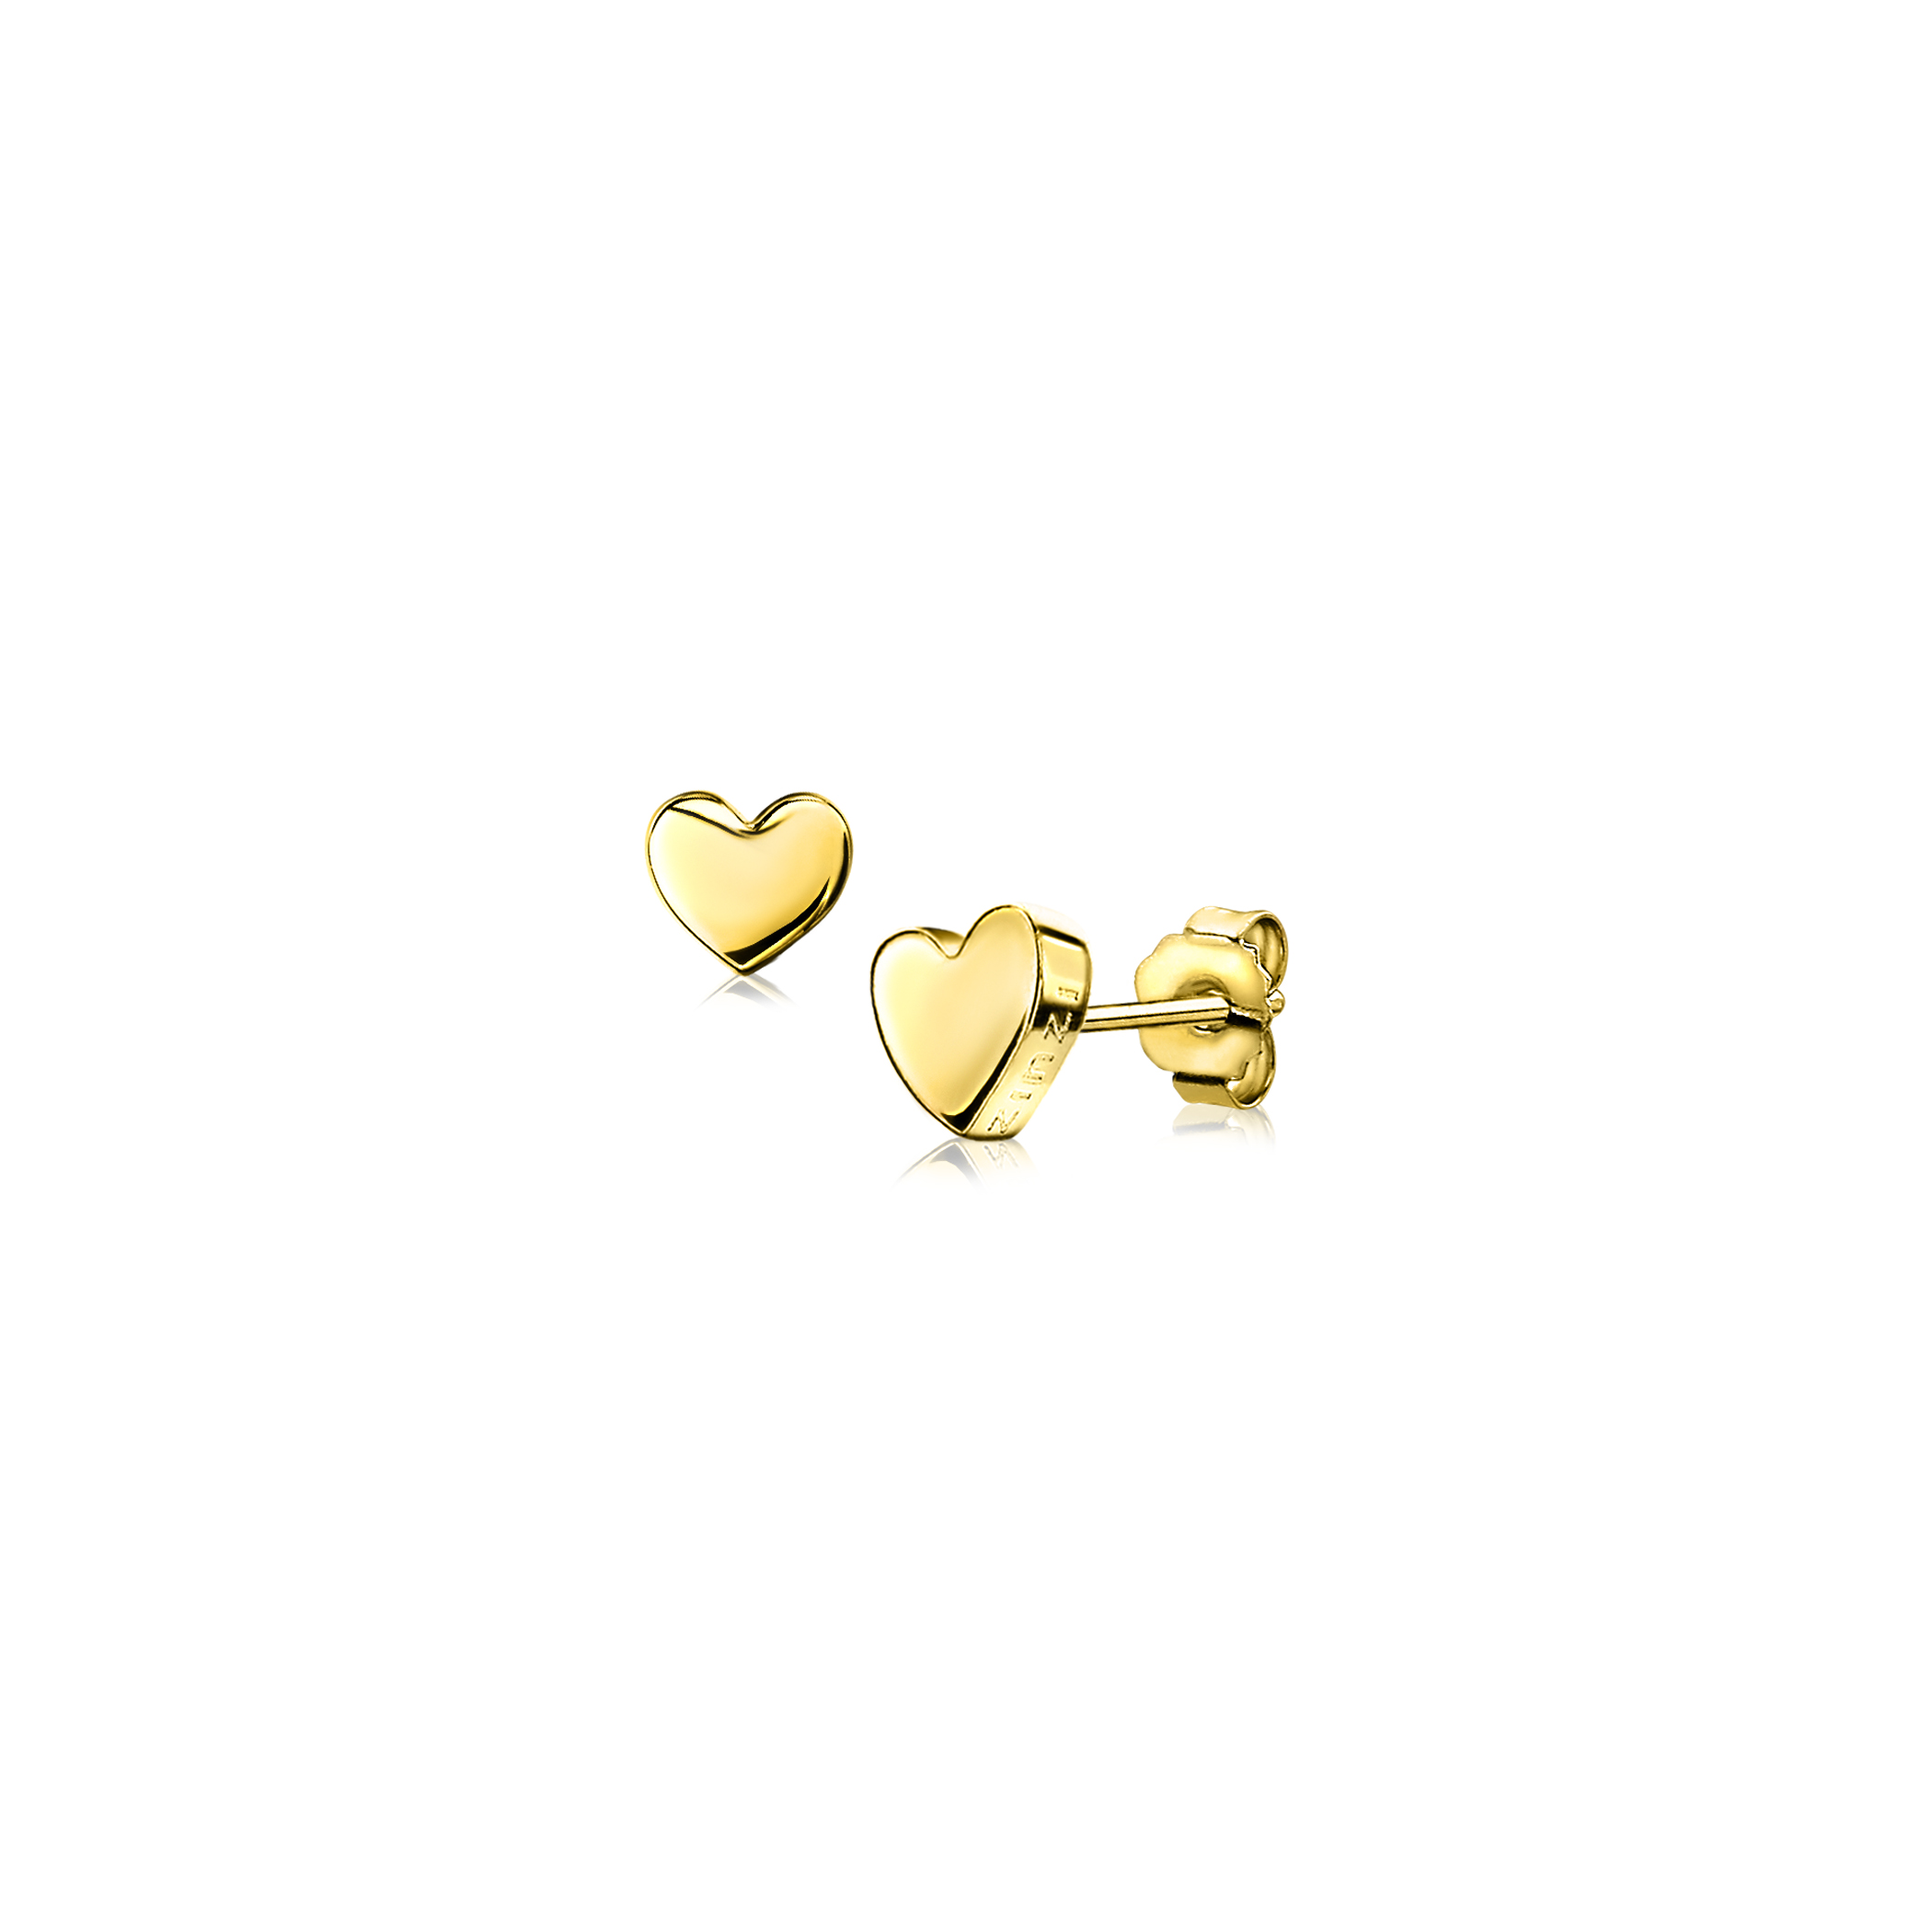 6mm ZINZI Gold Plated Sterling Silver Stud Earrings Heart ZIO1378G